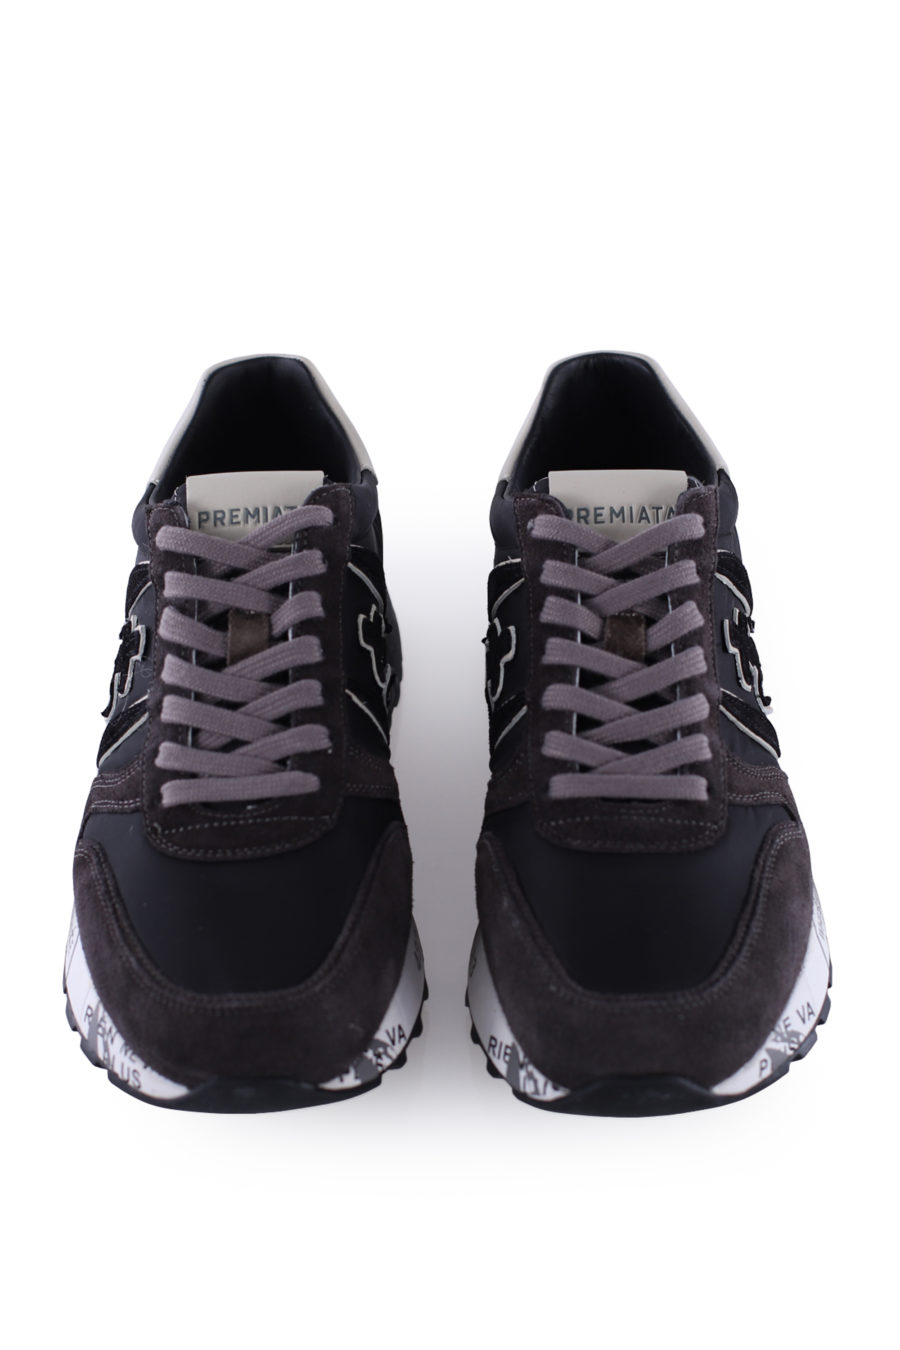 Zapatillas "Lander" color marrón y negro - IMG 9988